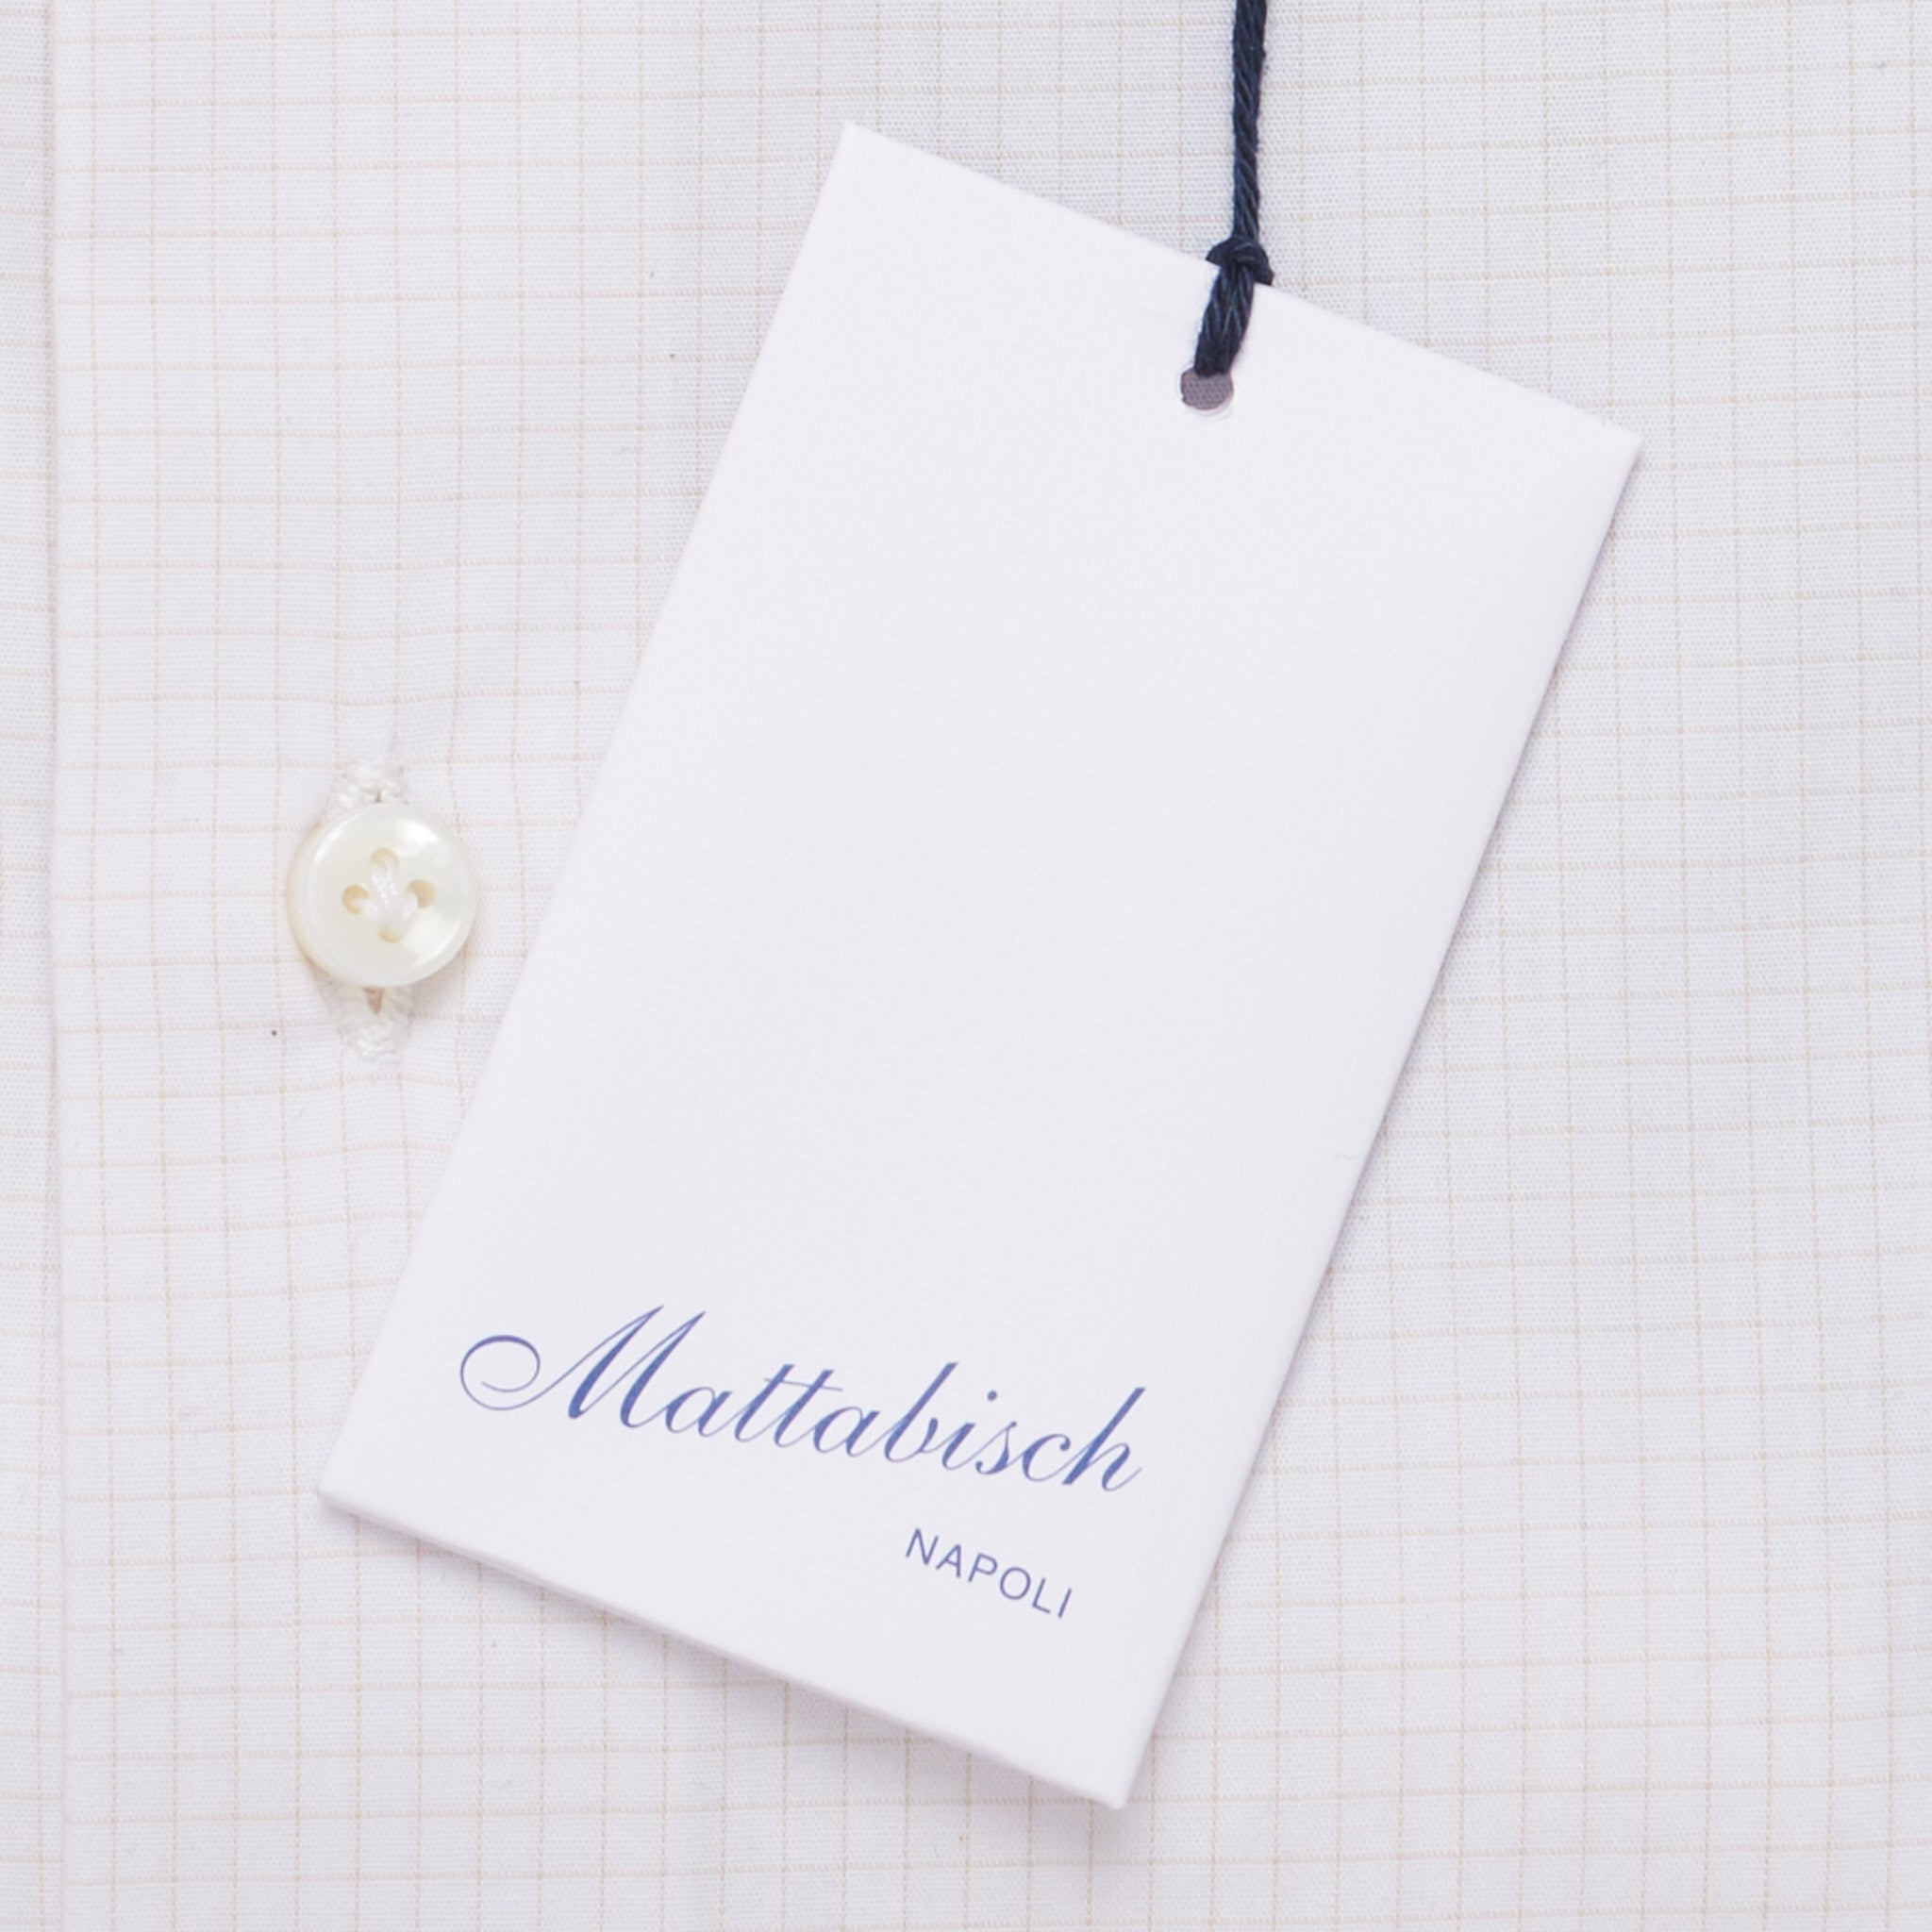 MATTABISCH by Kiton Handmade White Beige Checkered Dress Shirt NEW MATTABISCH